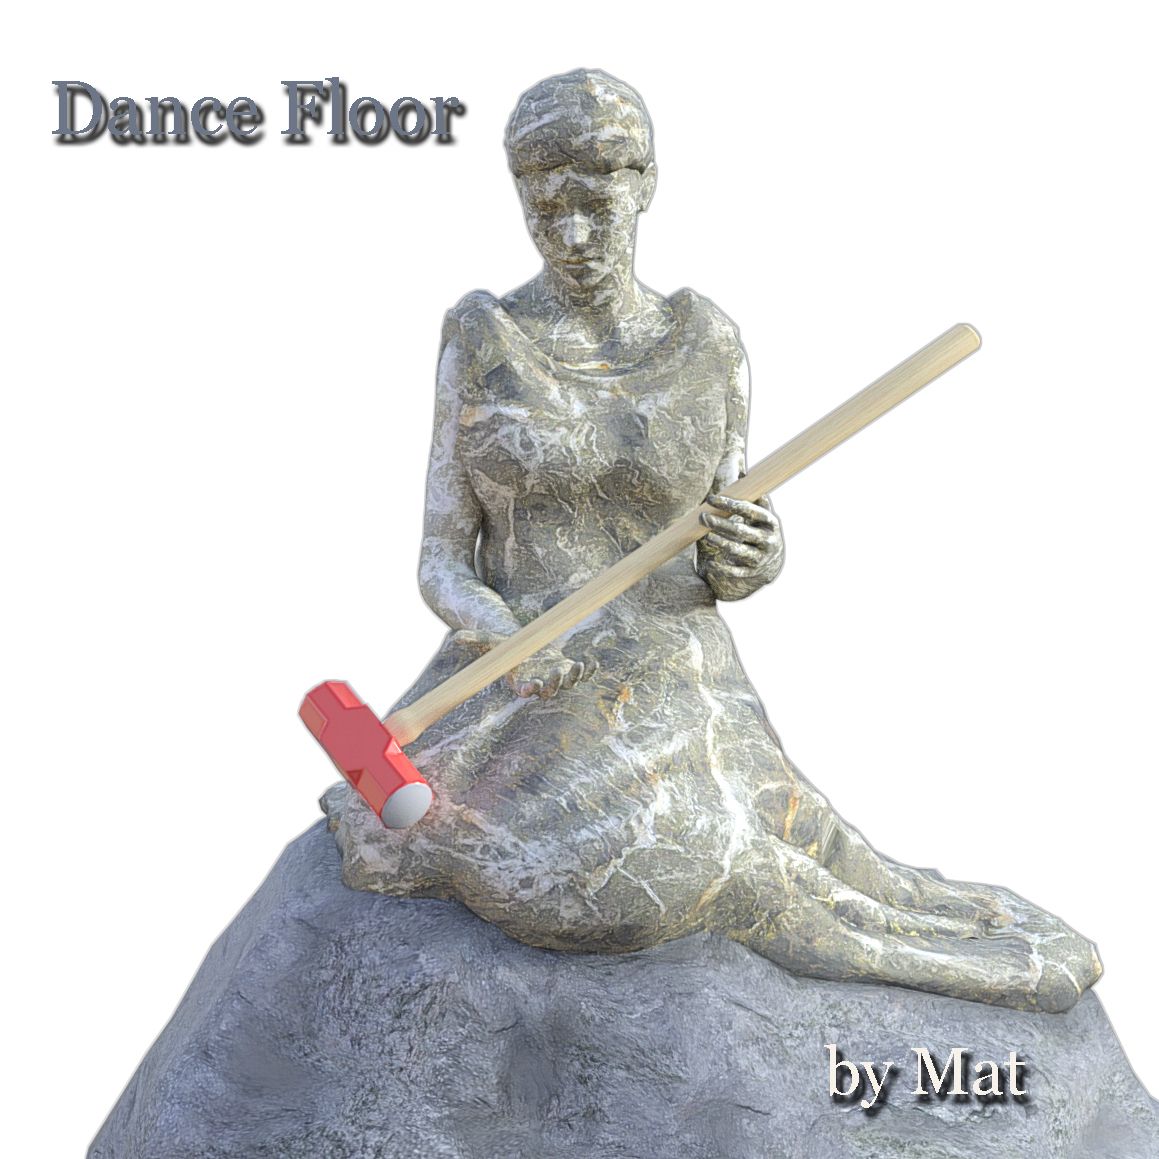 Dance Floor - Cover